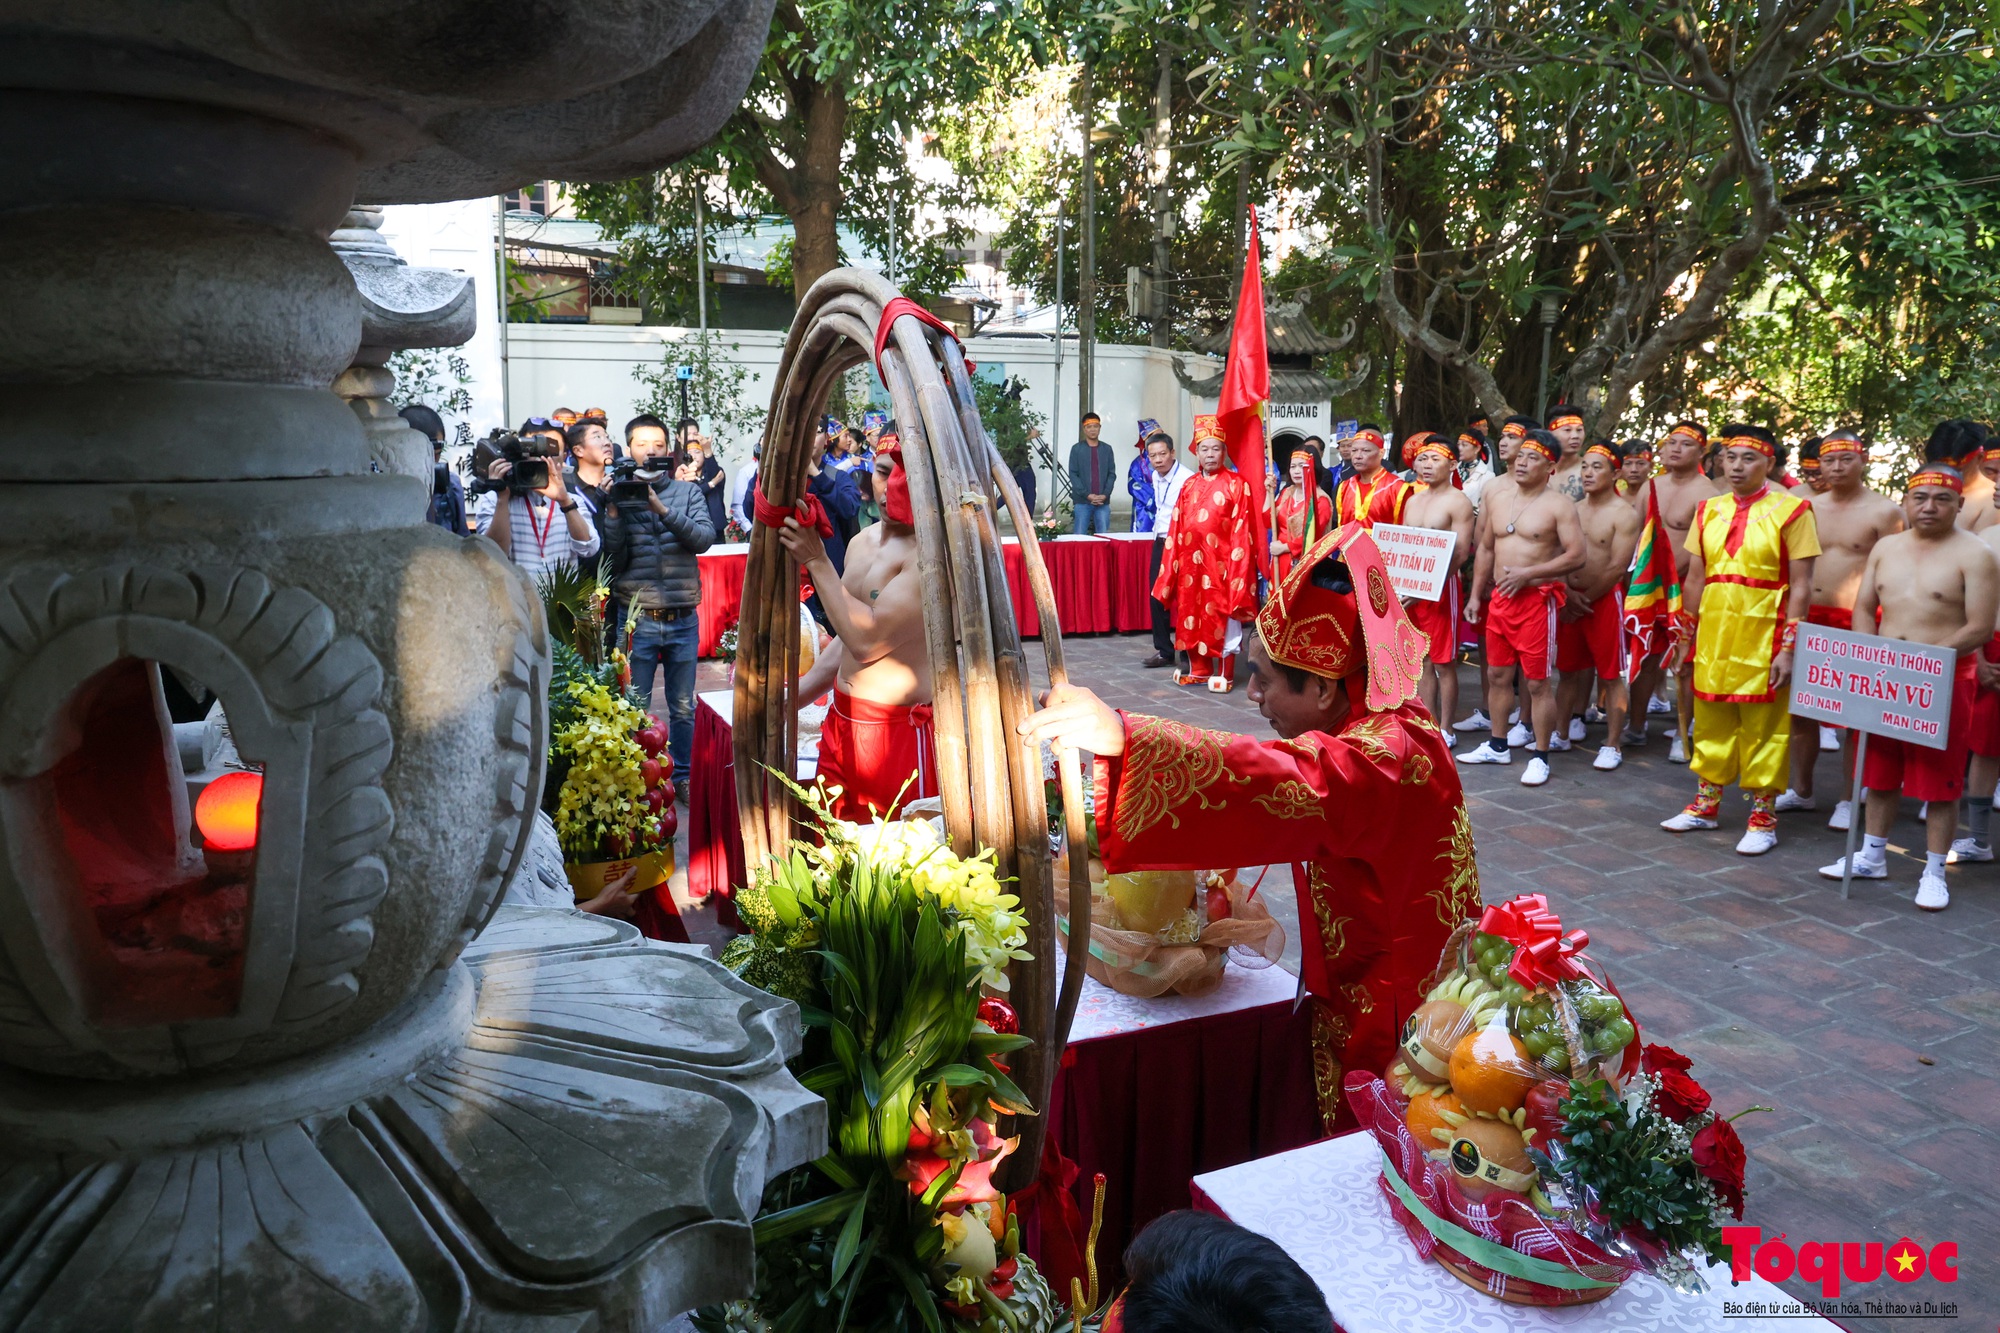 Lần đầu tiên tổ chức liên hoan trình diễn nghi lễ và trò chơi kéo co tại Việt Nam - Ảnh 2.